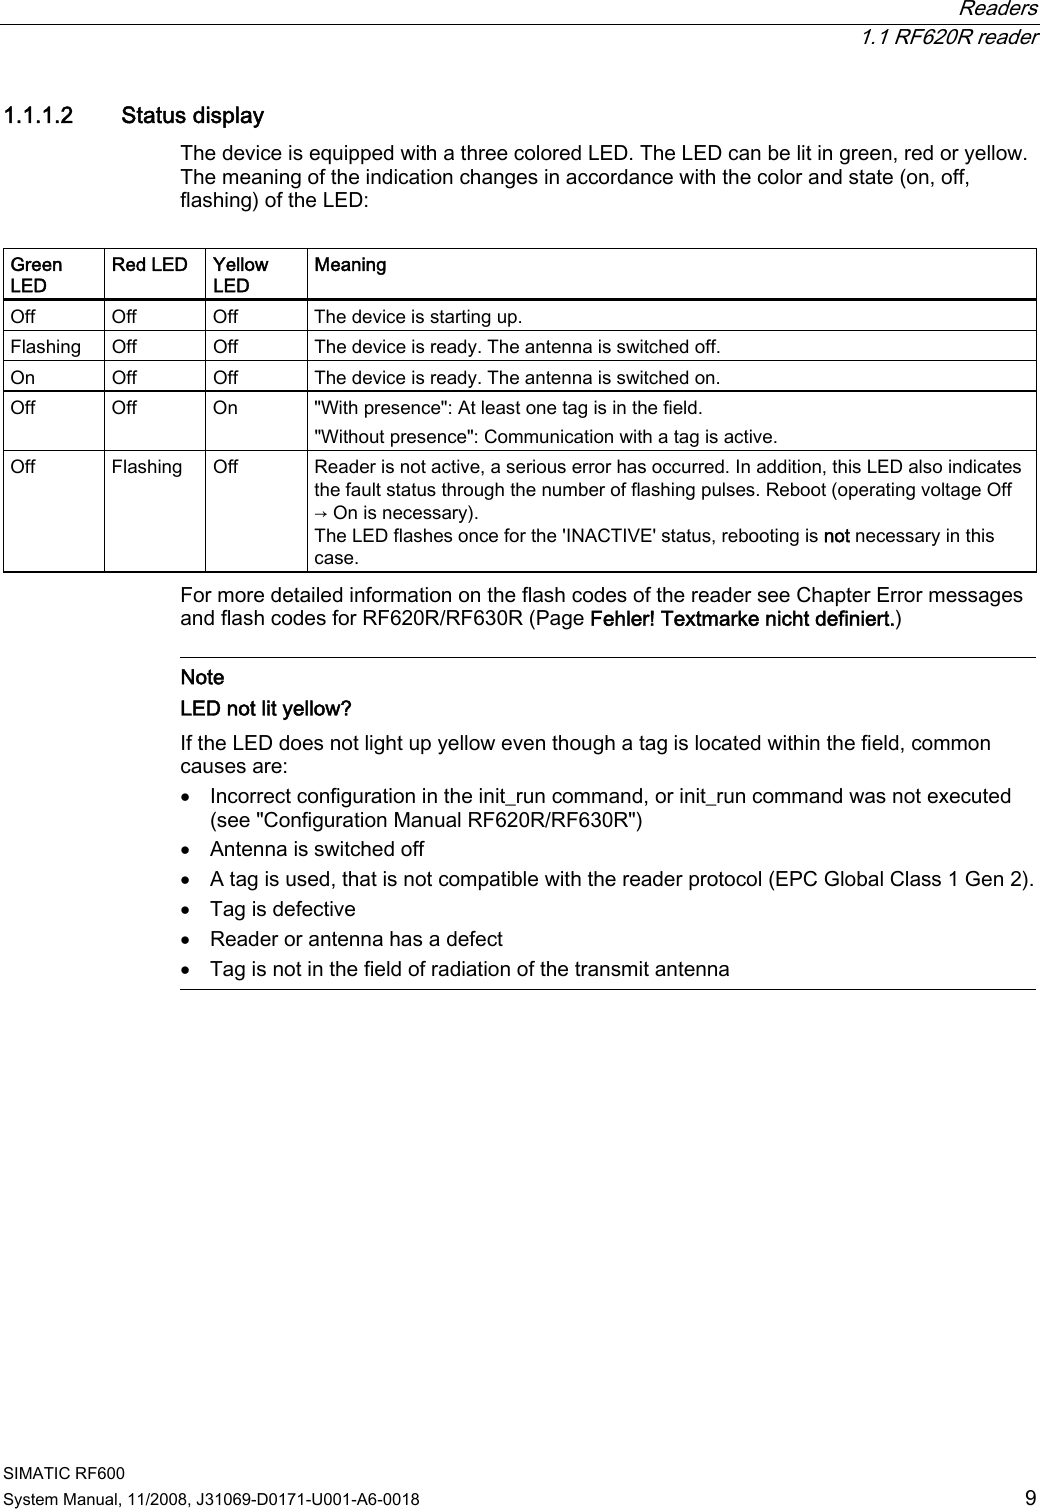 Page 5 of Siemens RF620R UHF RFID READER User Manual System Manual RF600 en